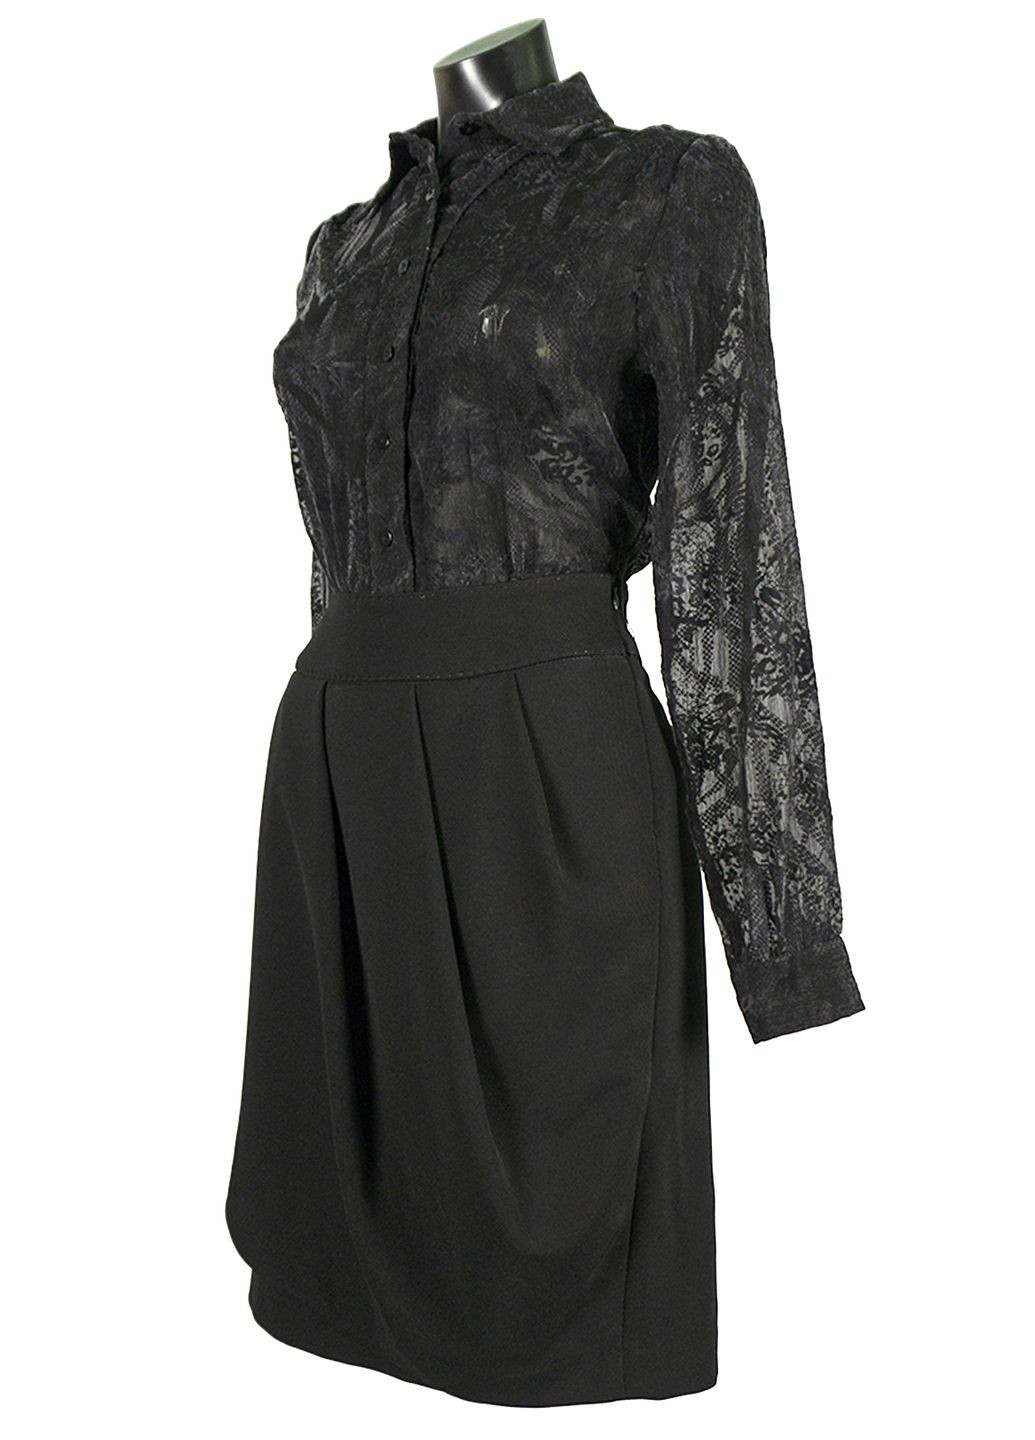 Чёрная женская блуза из органзы с баской lw-116667-14 черный Lowett